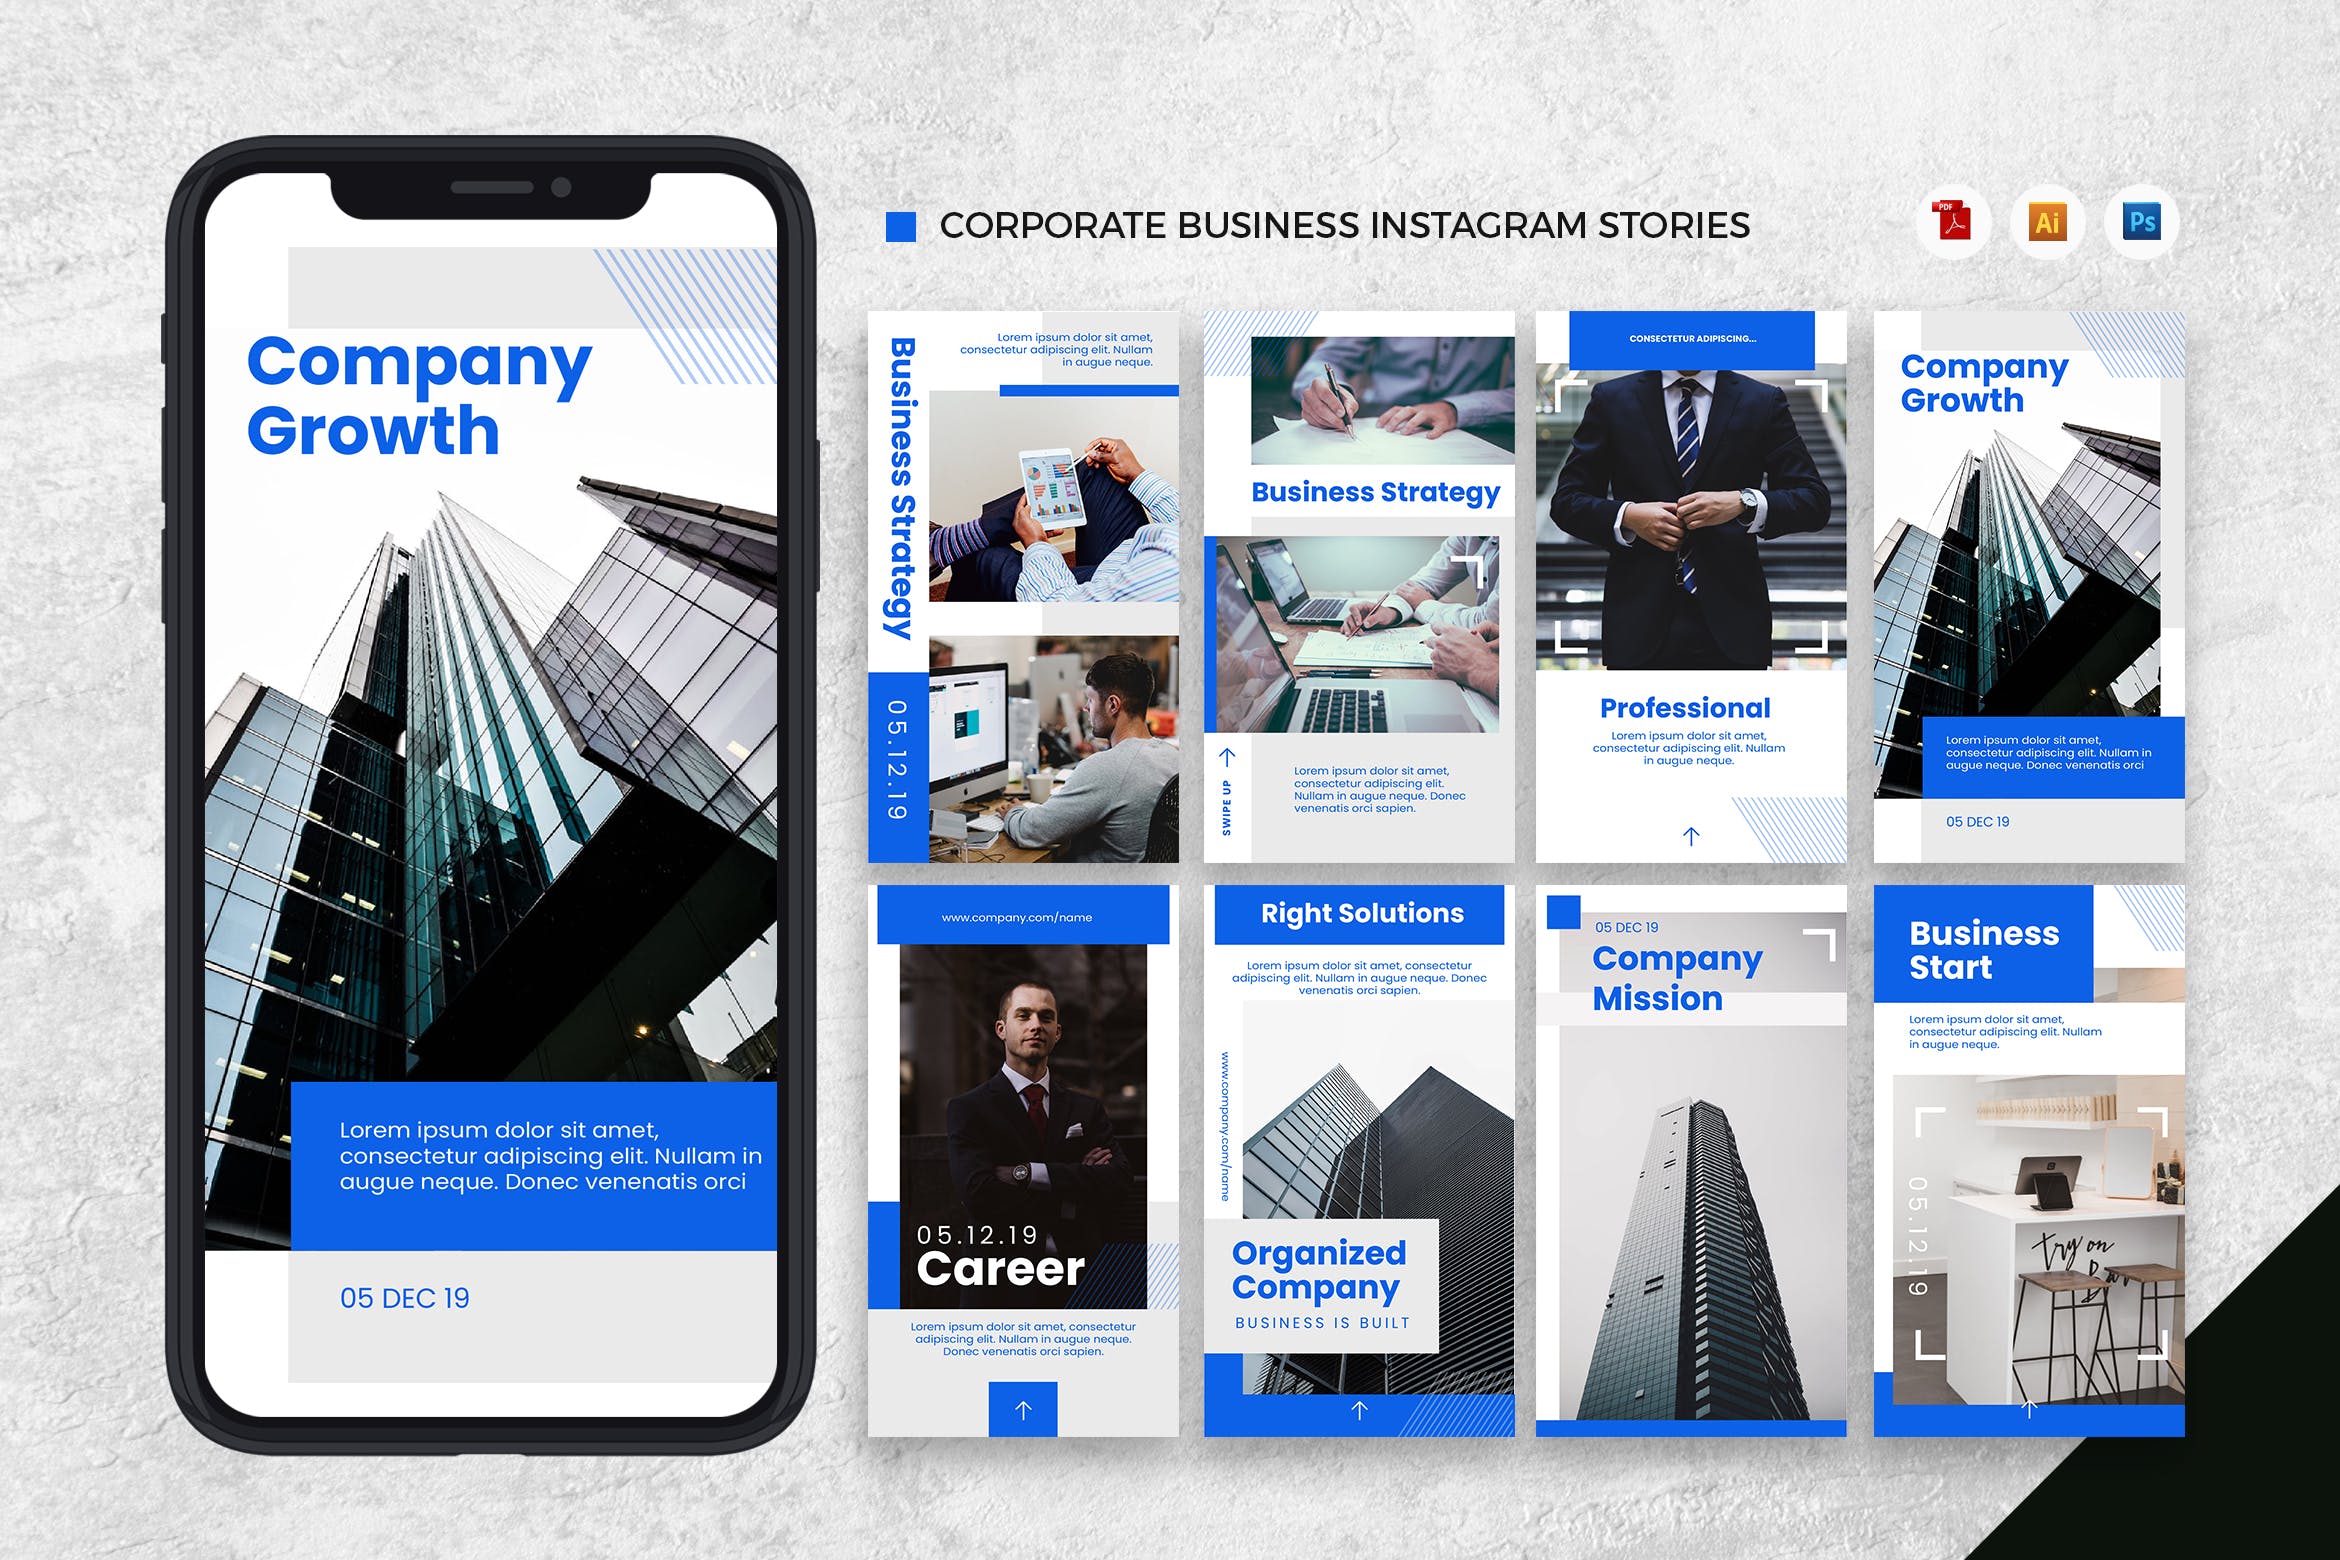 企业品牌Instagram社交宣传设计模板素材库精选[AI&PSD] Corporate Business Instagram Stories AI and PSD插图